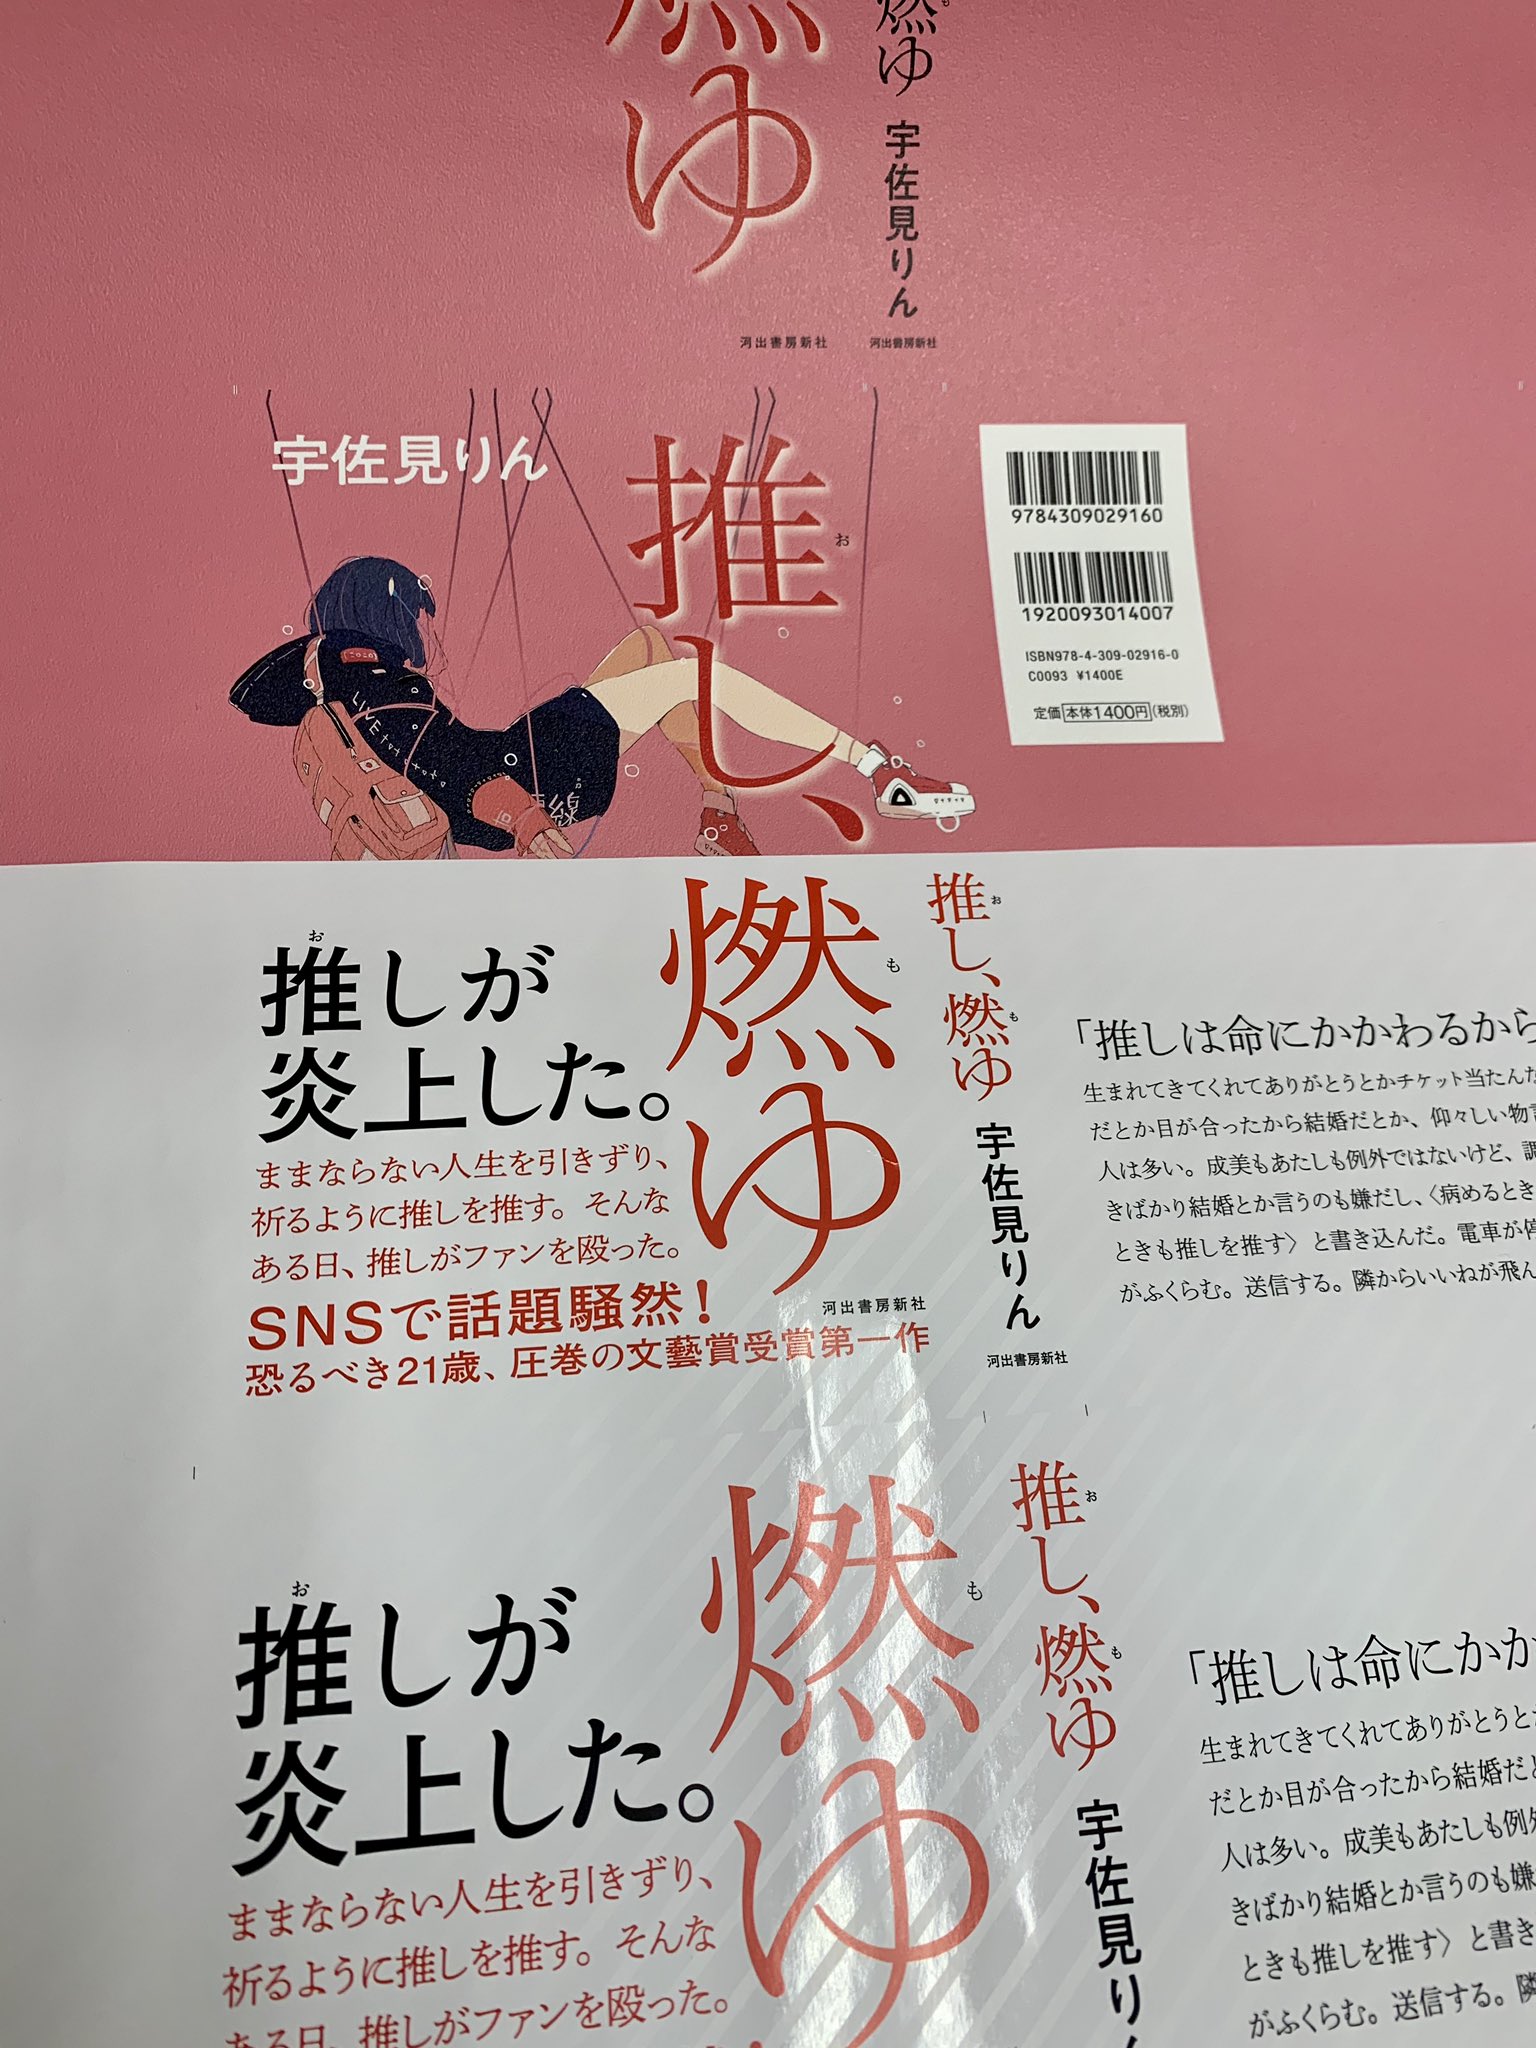 宇佐見りん 第三作『くるまの娘』単行本5月12日発売 on X